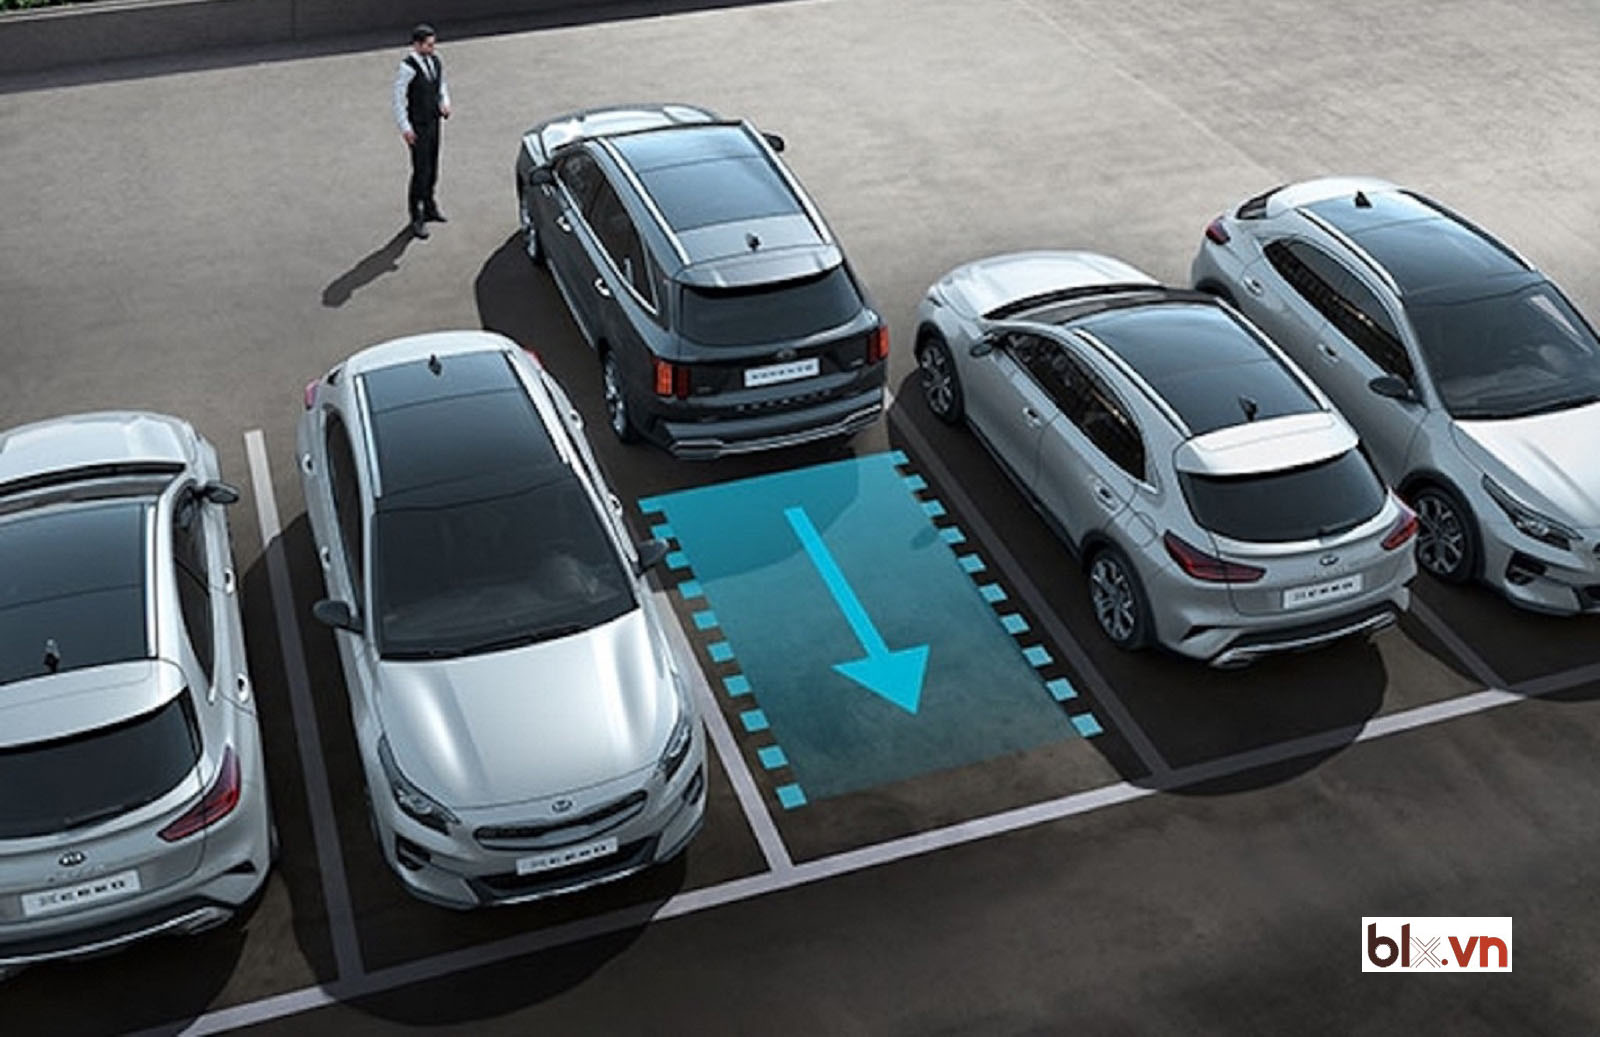 Hệ thống hỗ trợ đỗ xe tự động giúp tài xế thực hiện thao tác đỗ xe một cách dễ dàng và an toàn.